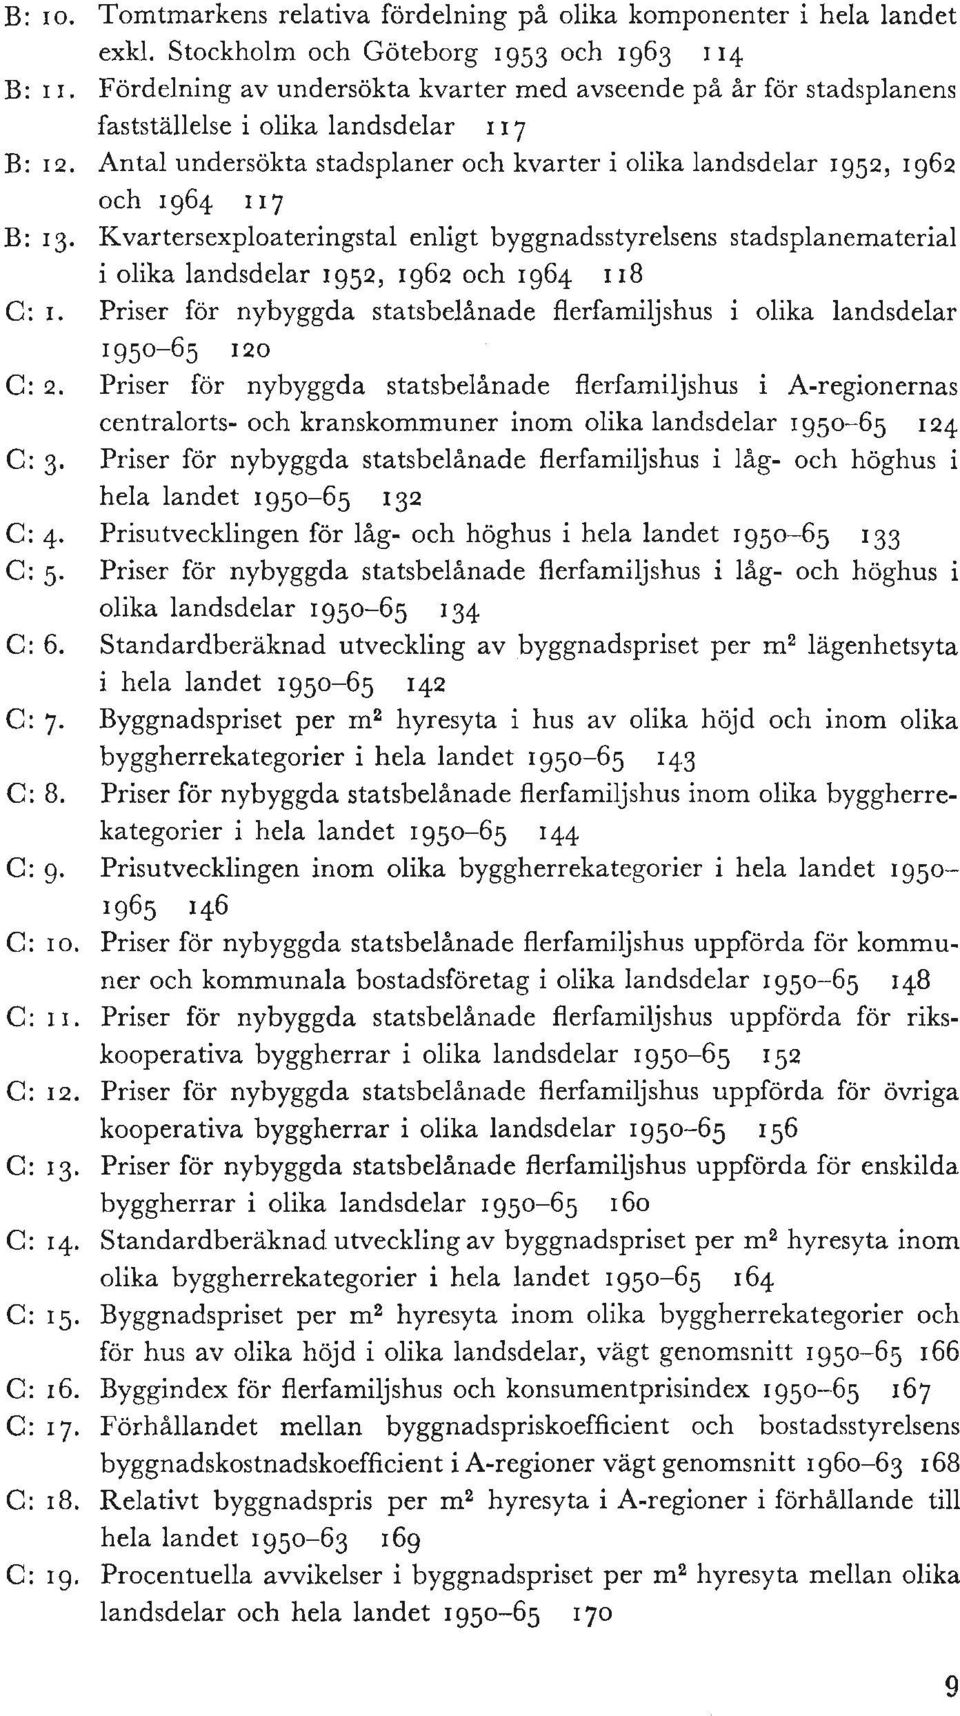 Stockholm oeh Goteborg 1953 oeh 1963 114 Fordelning av undersokta kvarter med avseende pa ar for stadsplanens faststallelse i olika landsdelar I 17 Antal undersokta stadsplaner oeh kvarter i olika